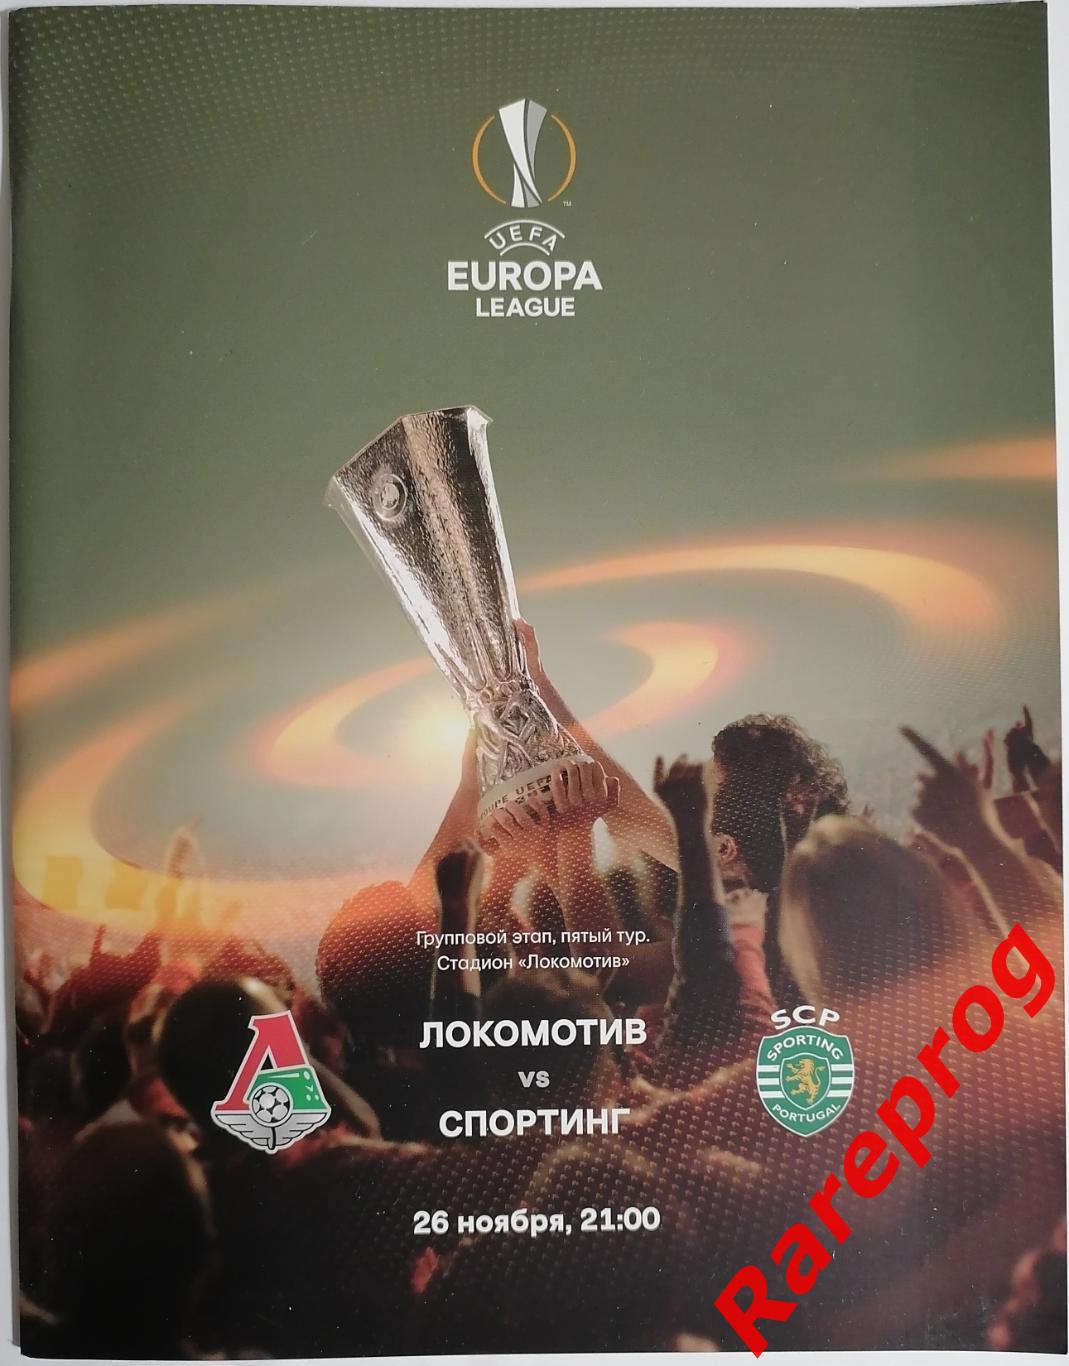 Локомотив Москва Россия - Спортинг Португалия 2015 кубок ЛЕ УЕФА